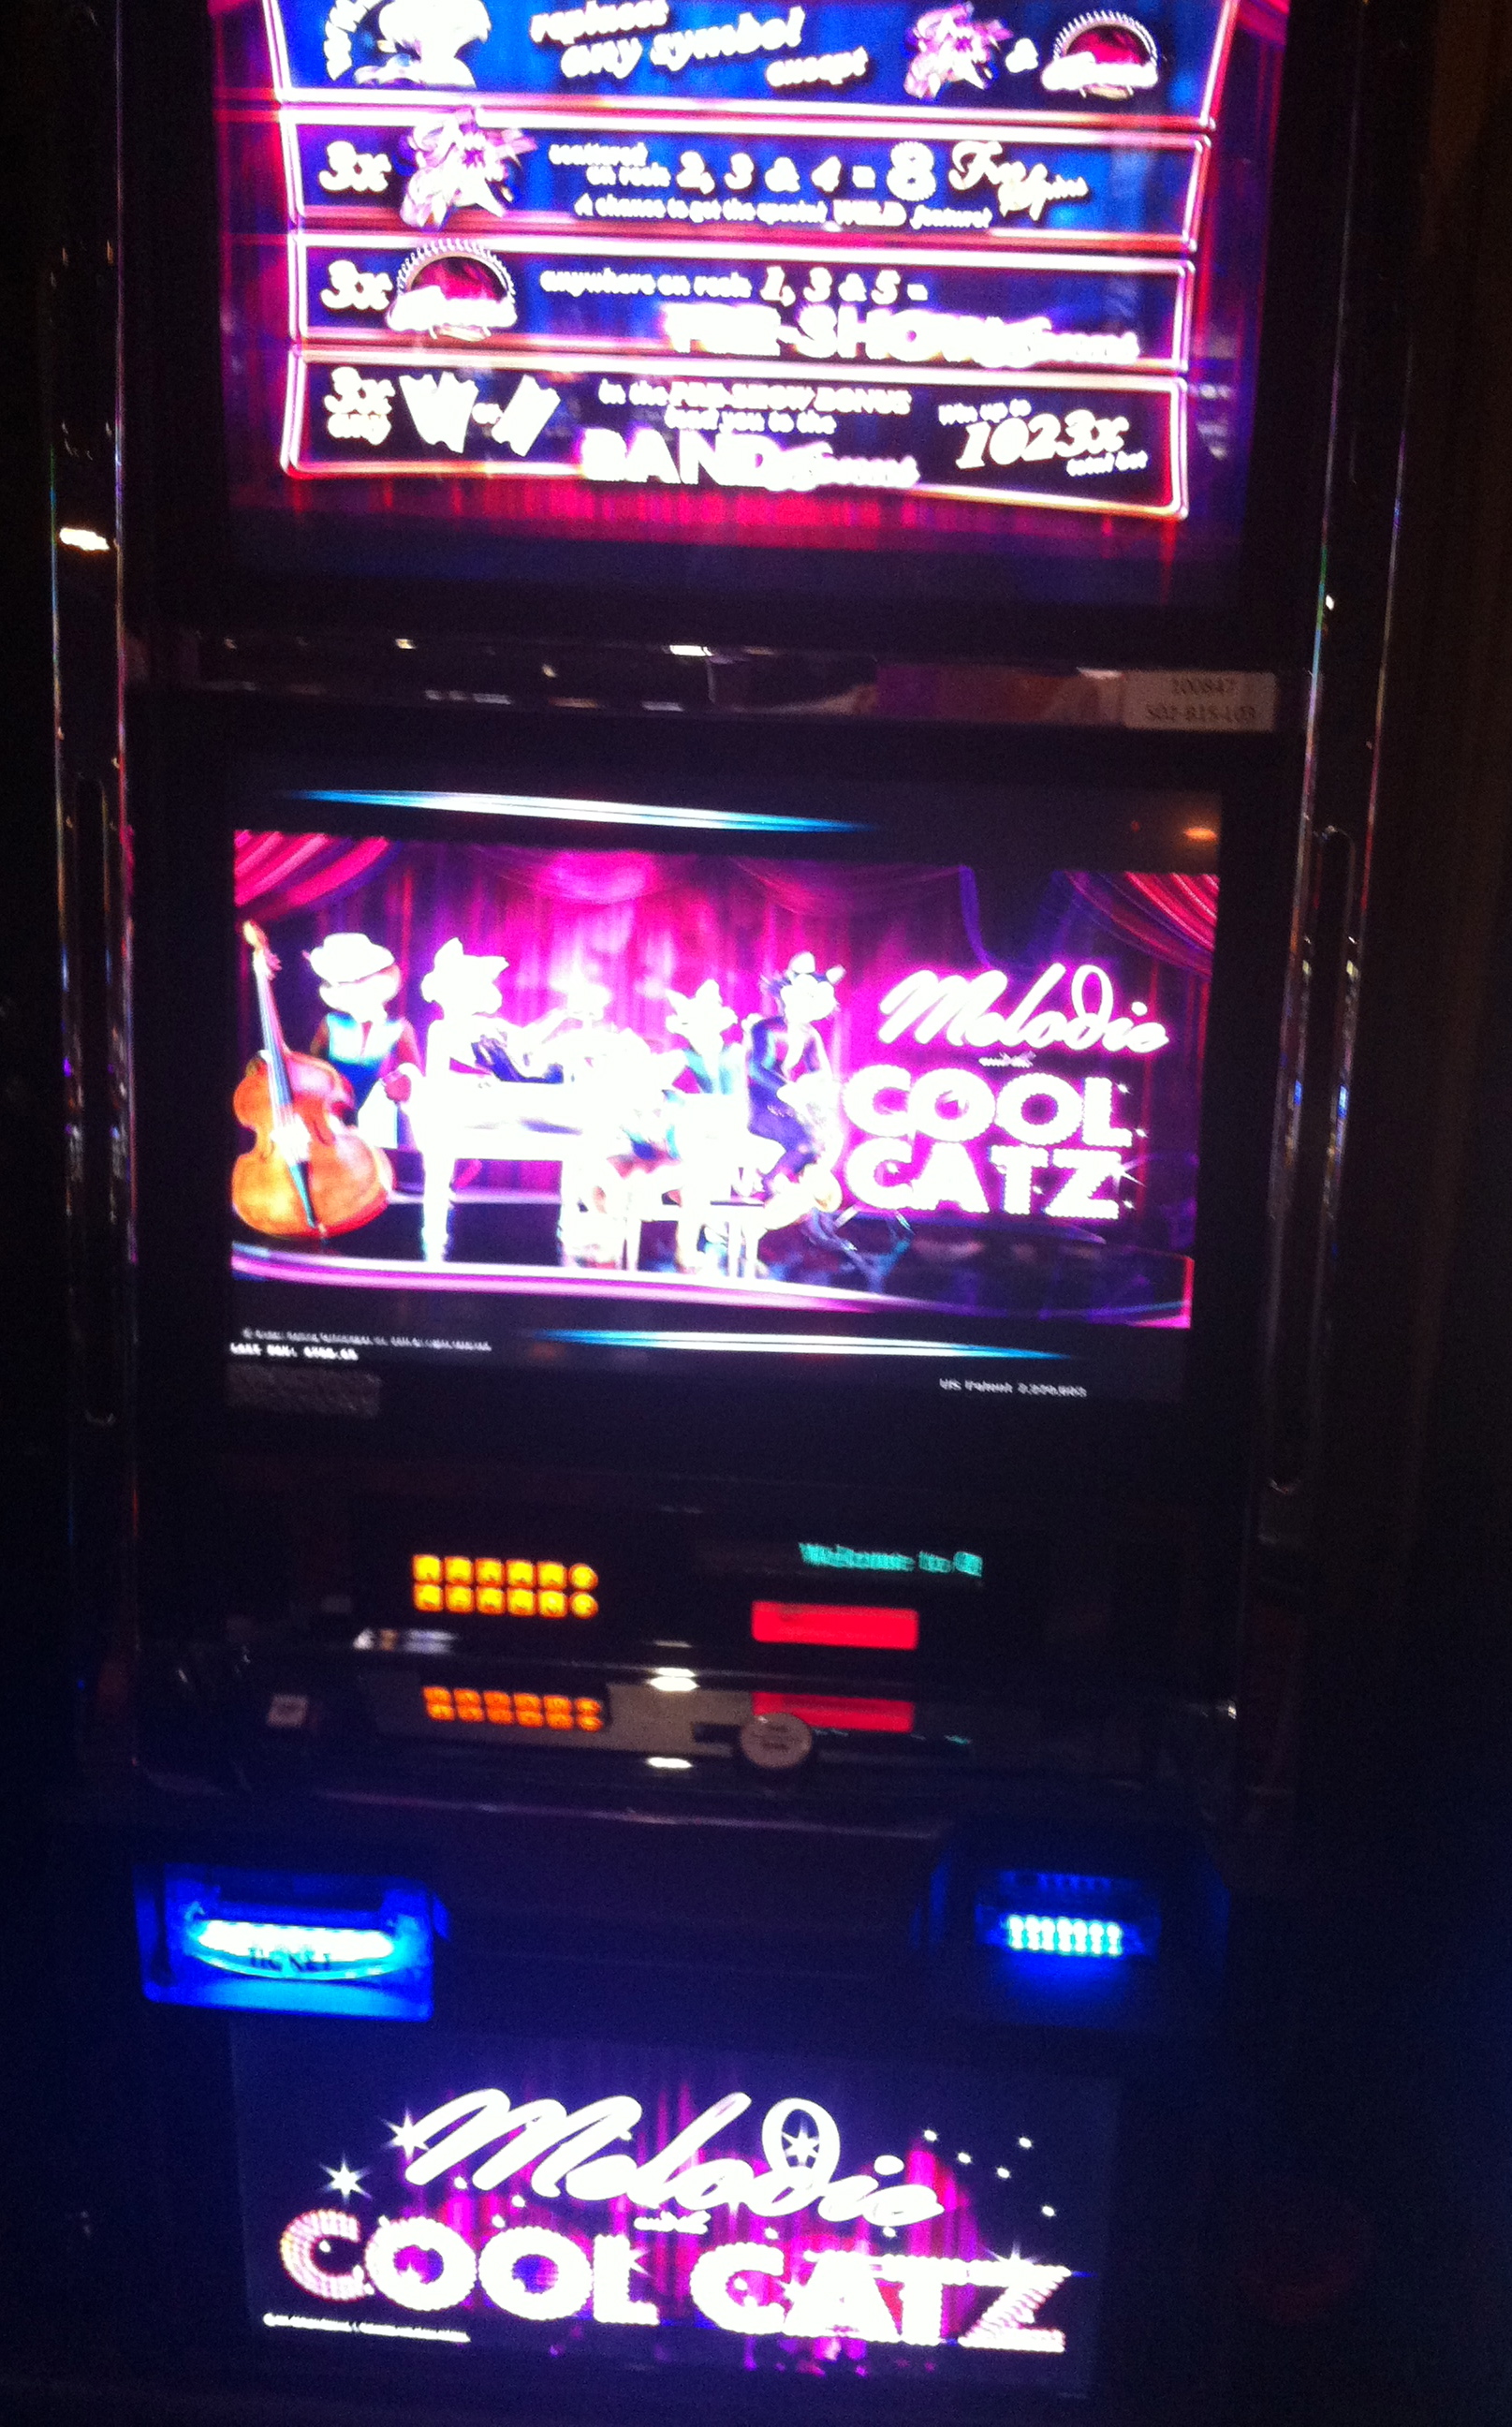 Cool Catz Slot Machine App